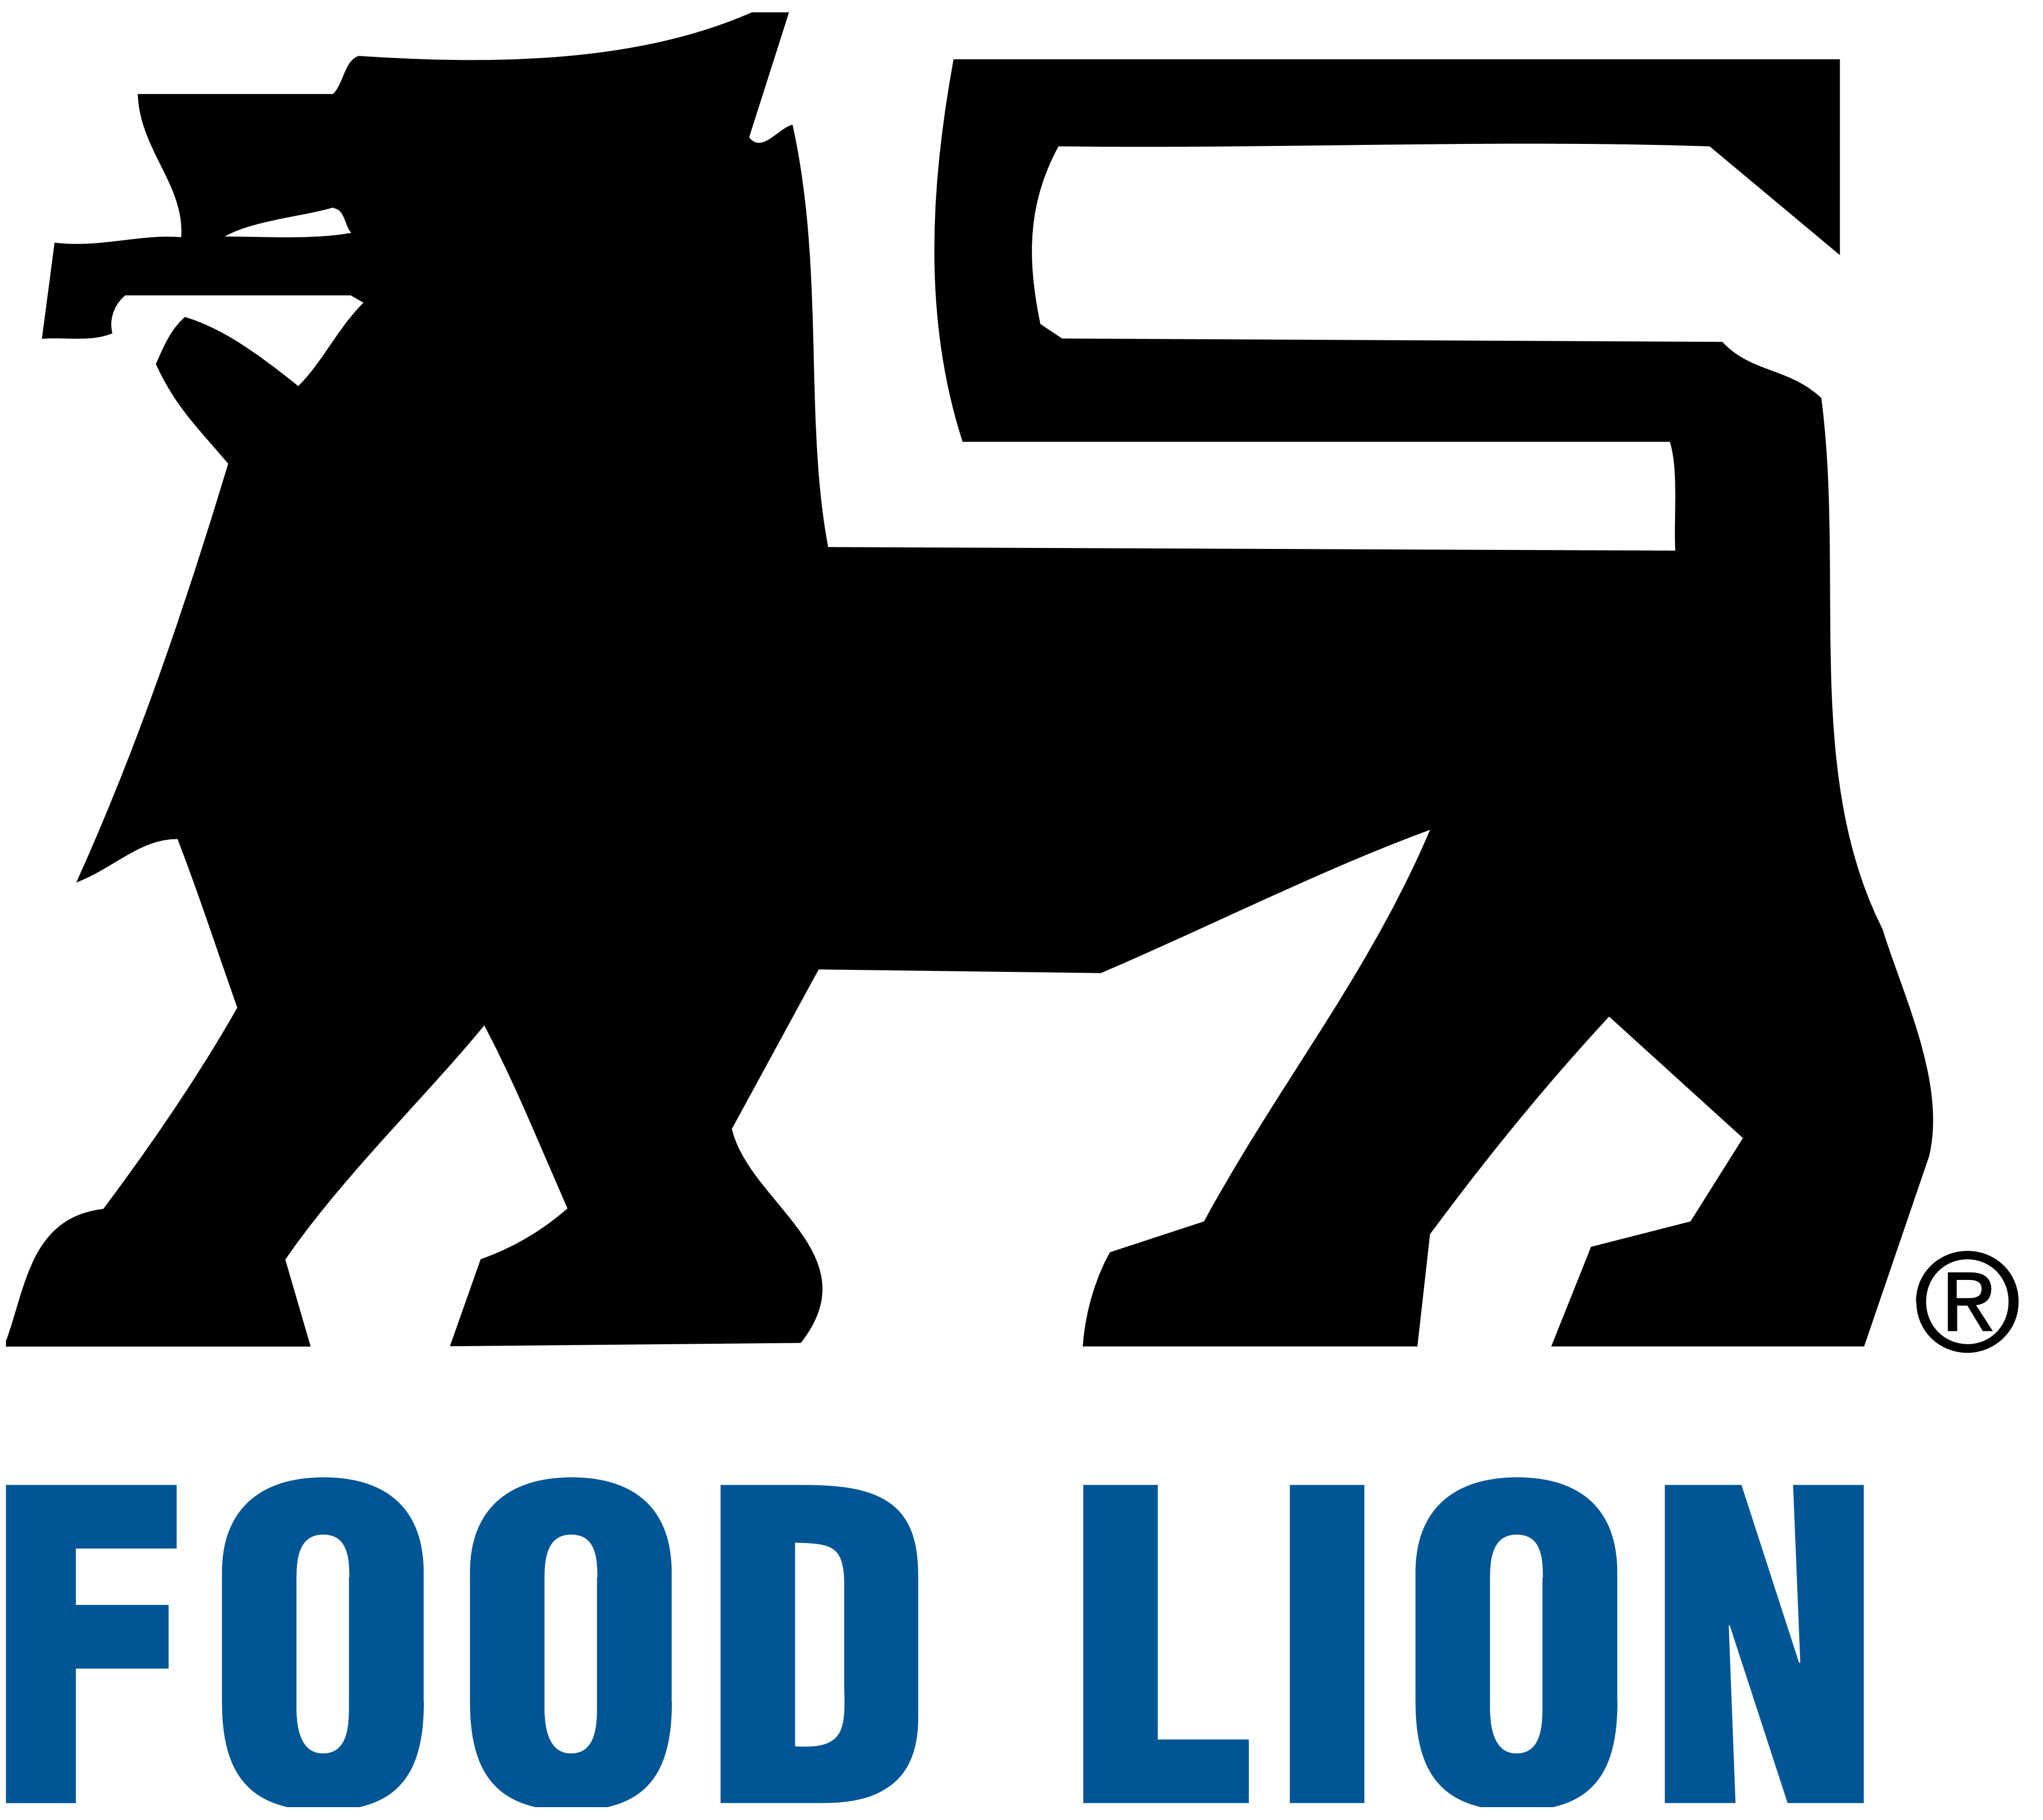 Food Lion logo, logotype